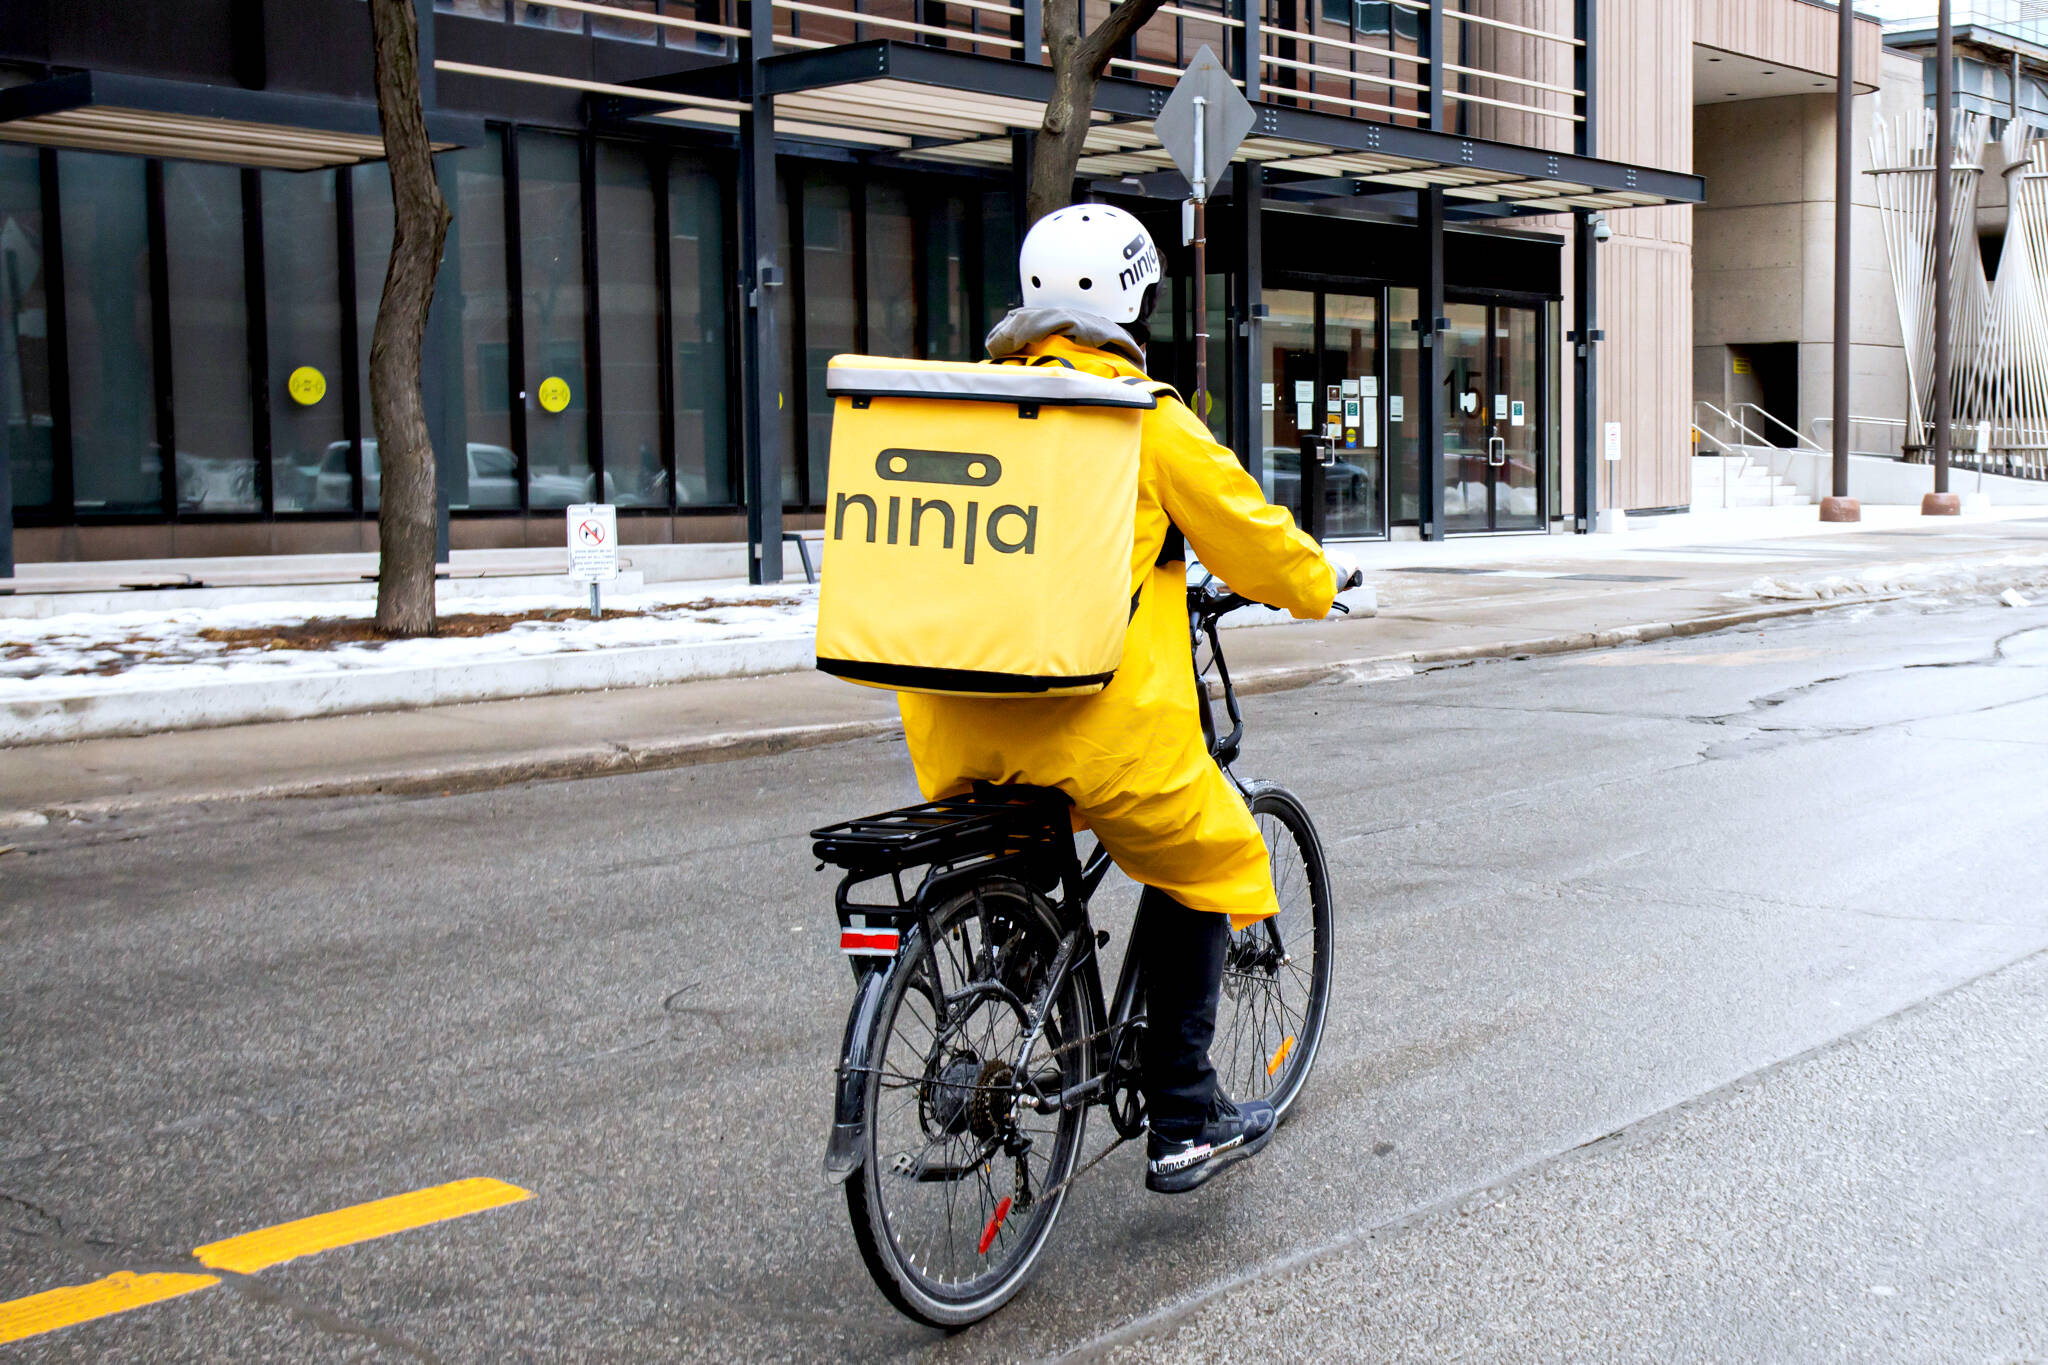 ninja delivery toronto